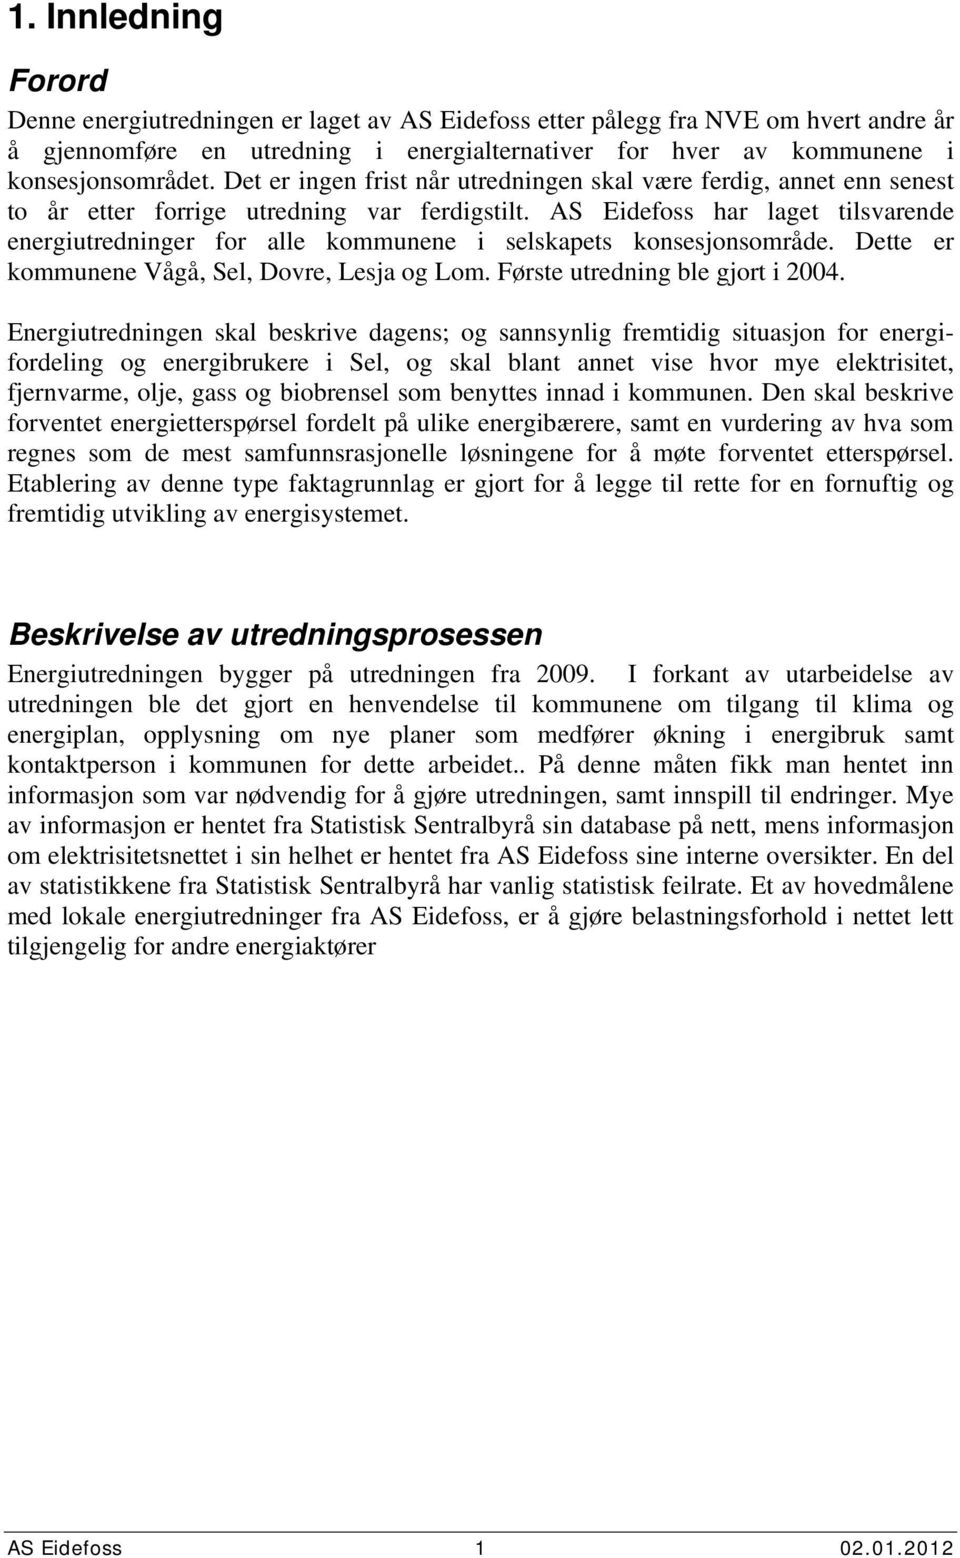 AS Eidefoss har laget tilsvarende energiutredninger for alle kommunene i selskapets konsesjonsområde. Dette er kommunene Vågå, Sel, Dovre, Lesja og Lom. Første utredning ble gjort i 24.